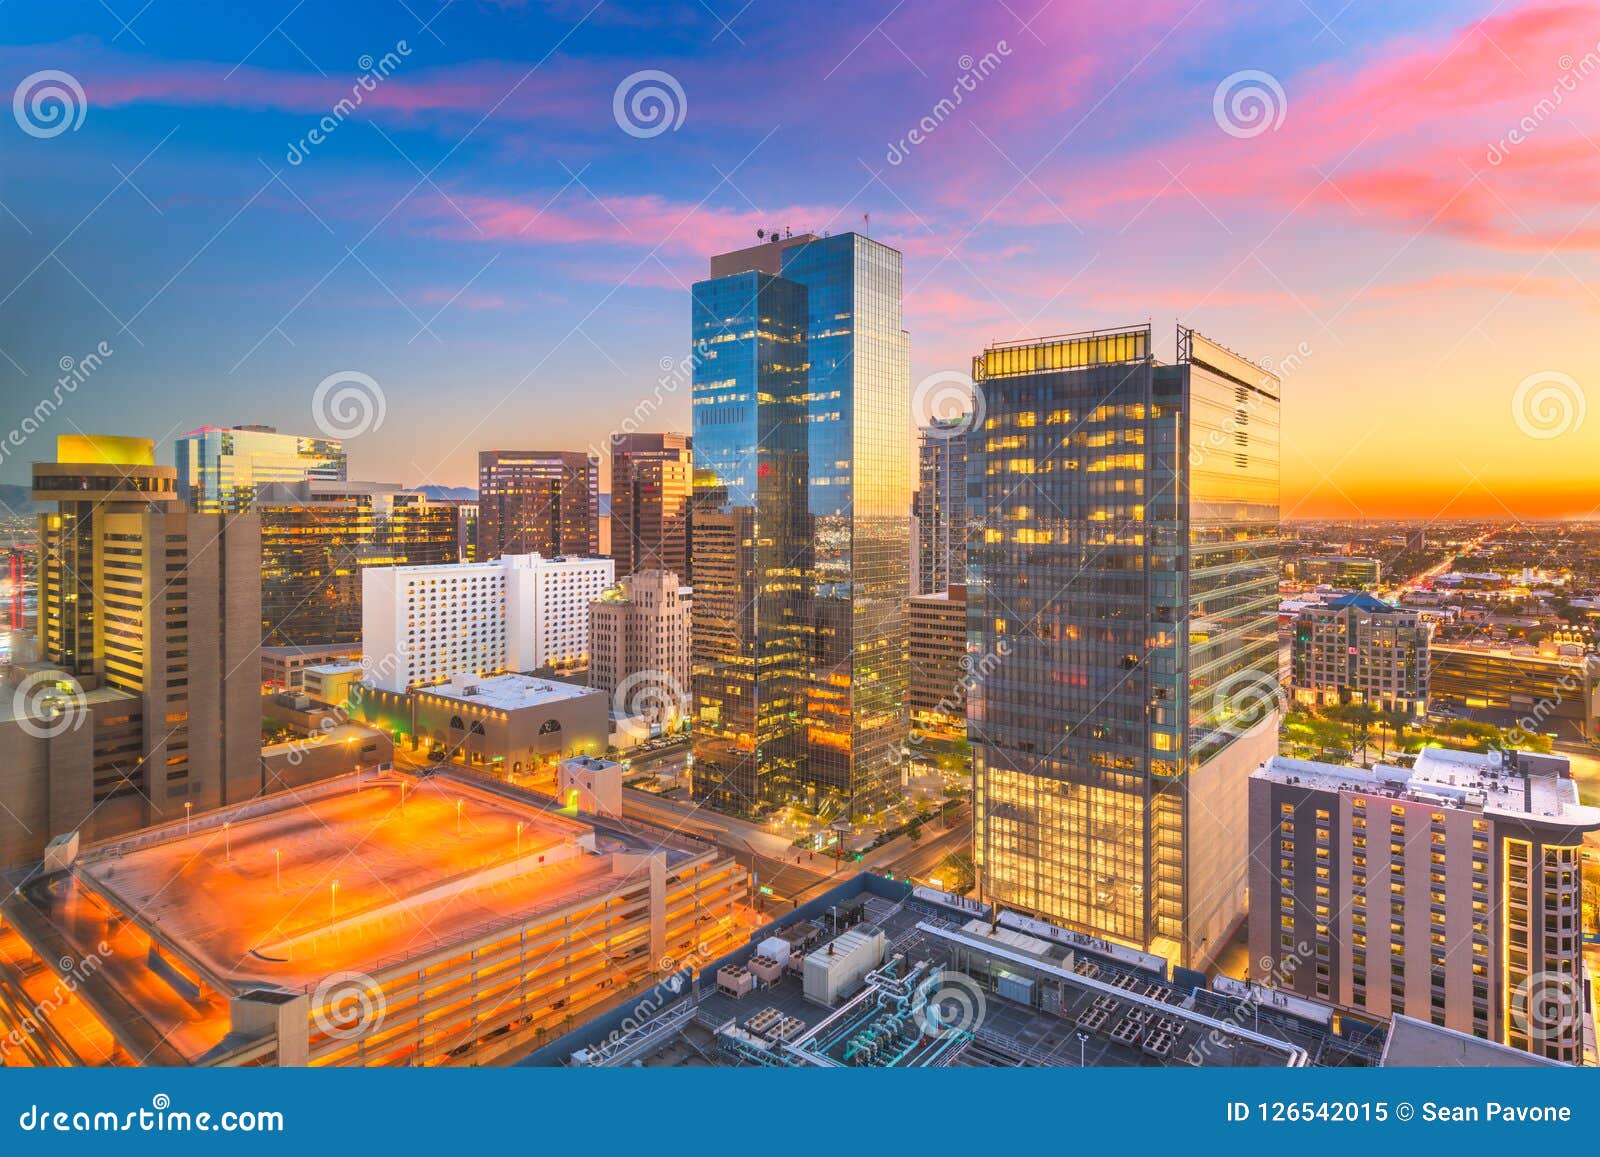 phoenix, arizona, usa cityscape